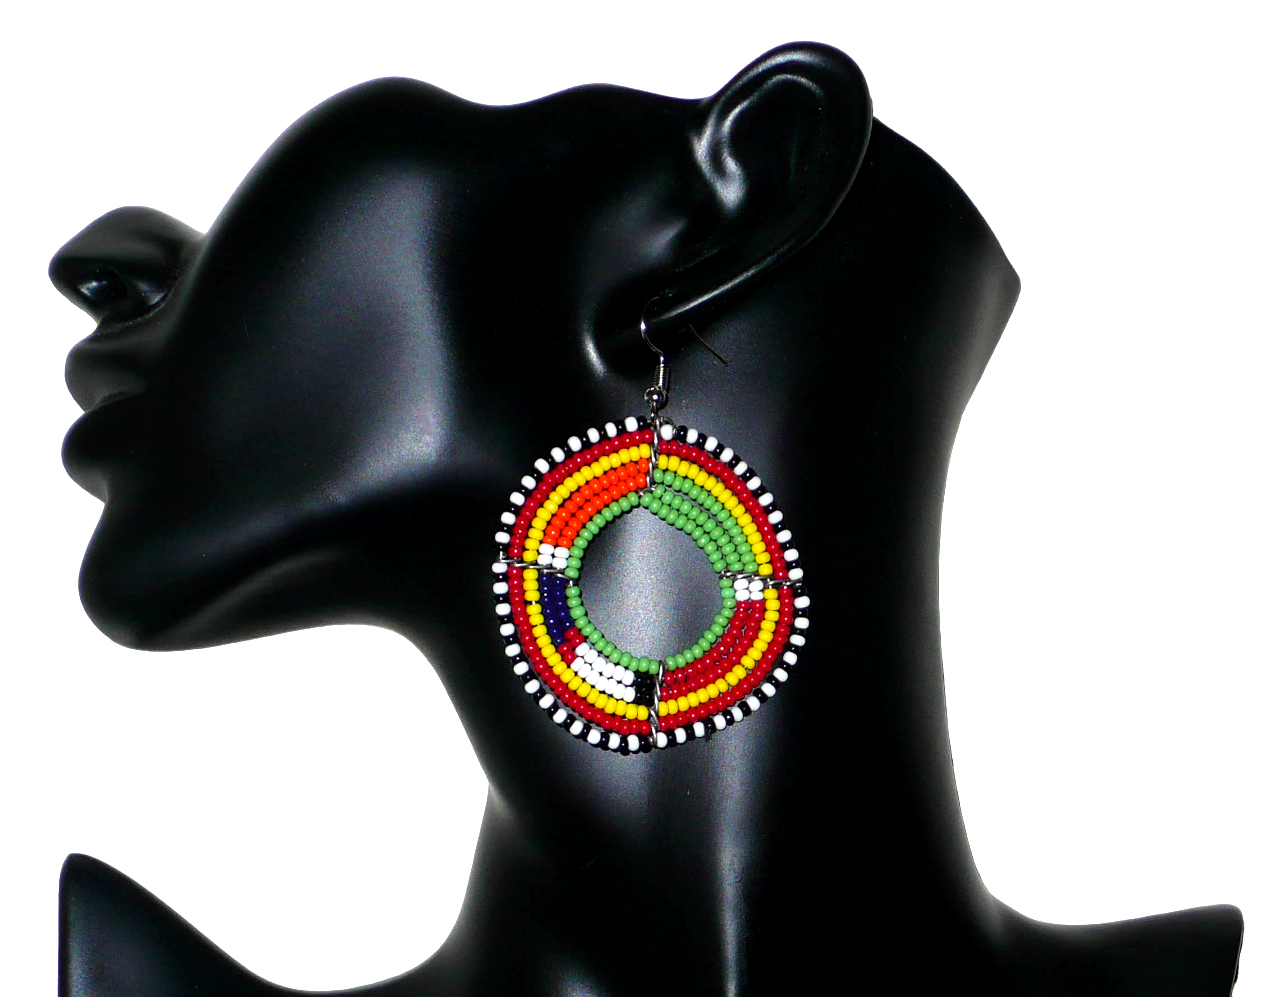 Bijoux africains. Boucles d'oreilles africaines rondes aux couleurs et motifs traditionnels Massai composées de perles de rocaille vertes et multicolores enfilées sur six rangées de fils de fer montés en forme de cercles. Ces boucles d'oreilles mesurent 7 cm de long et 5 cm de large ; elles se portent avec des crochets en acier inoxydable sur des oreilles percées. Elles sont ici présentées sur un mannequin. Timeless Fineries